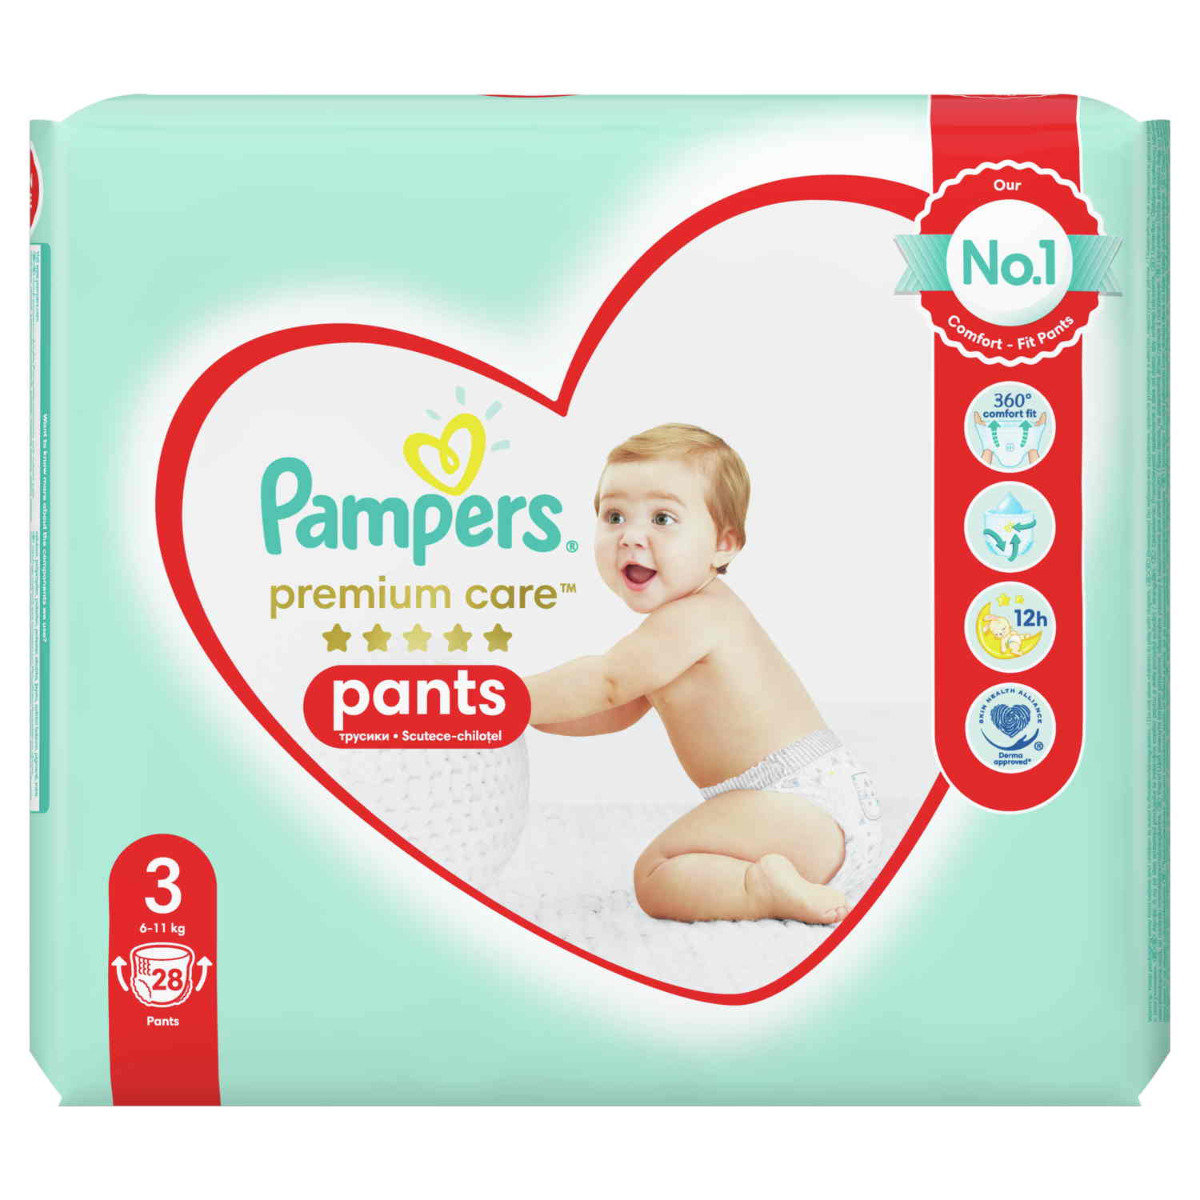 Pampers Premium Care Pants 3 6 11 kg) 28 szt